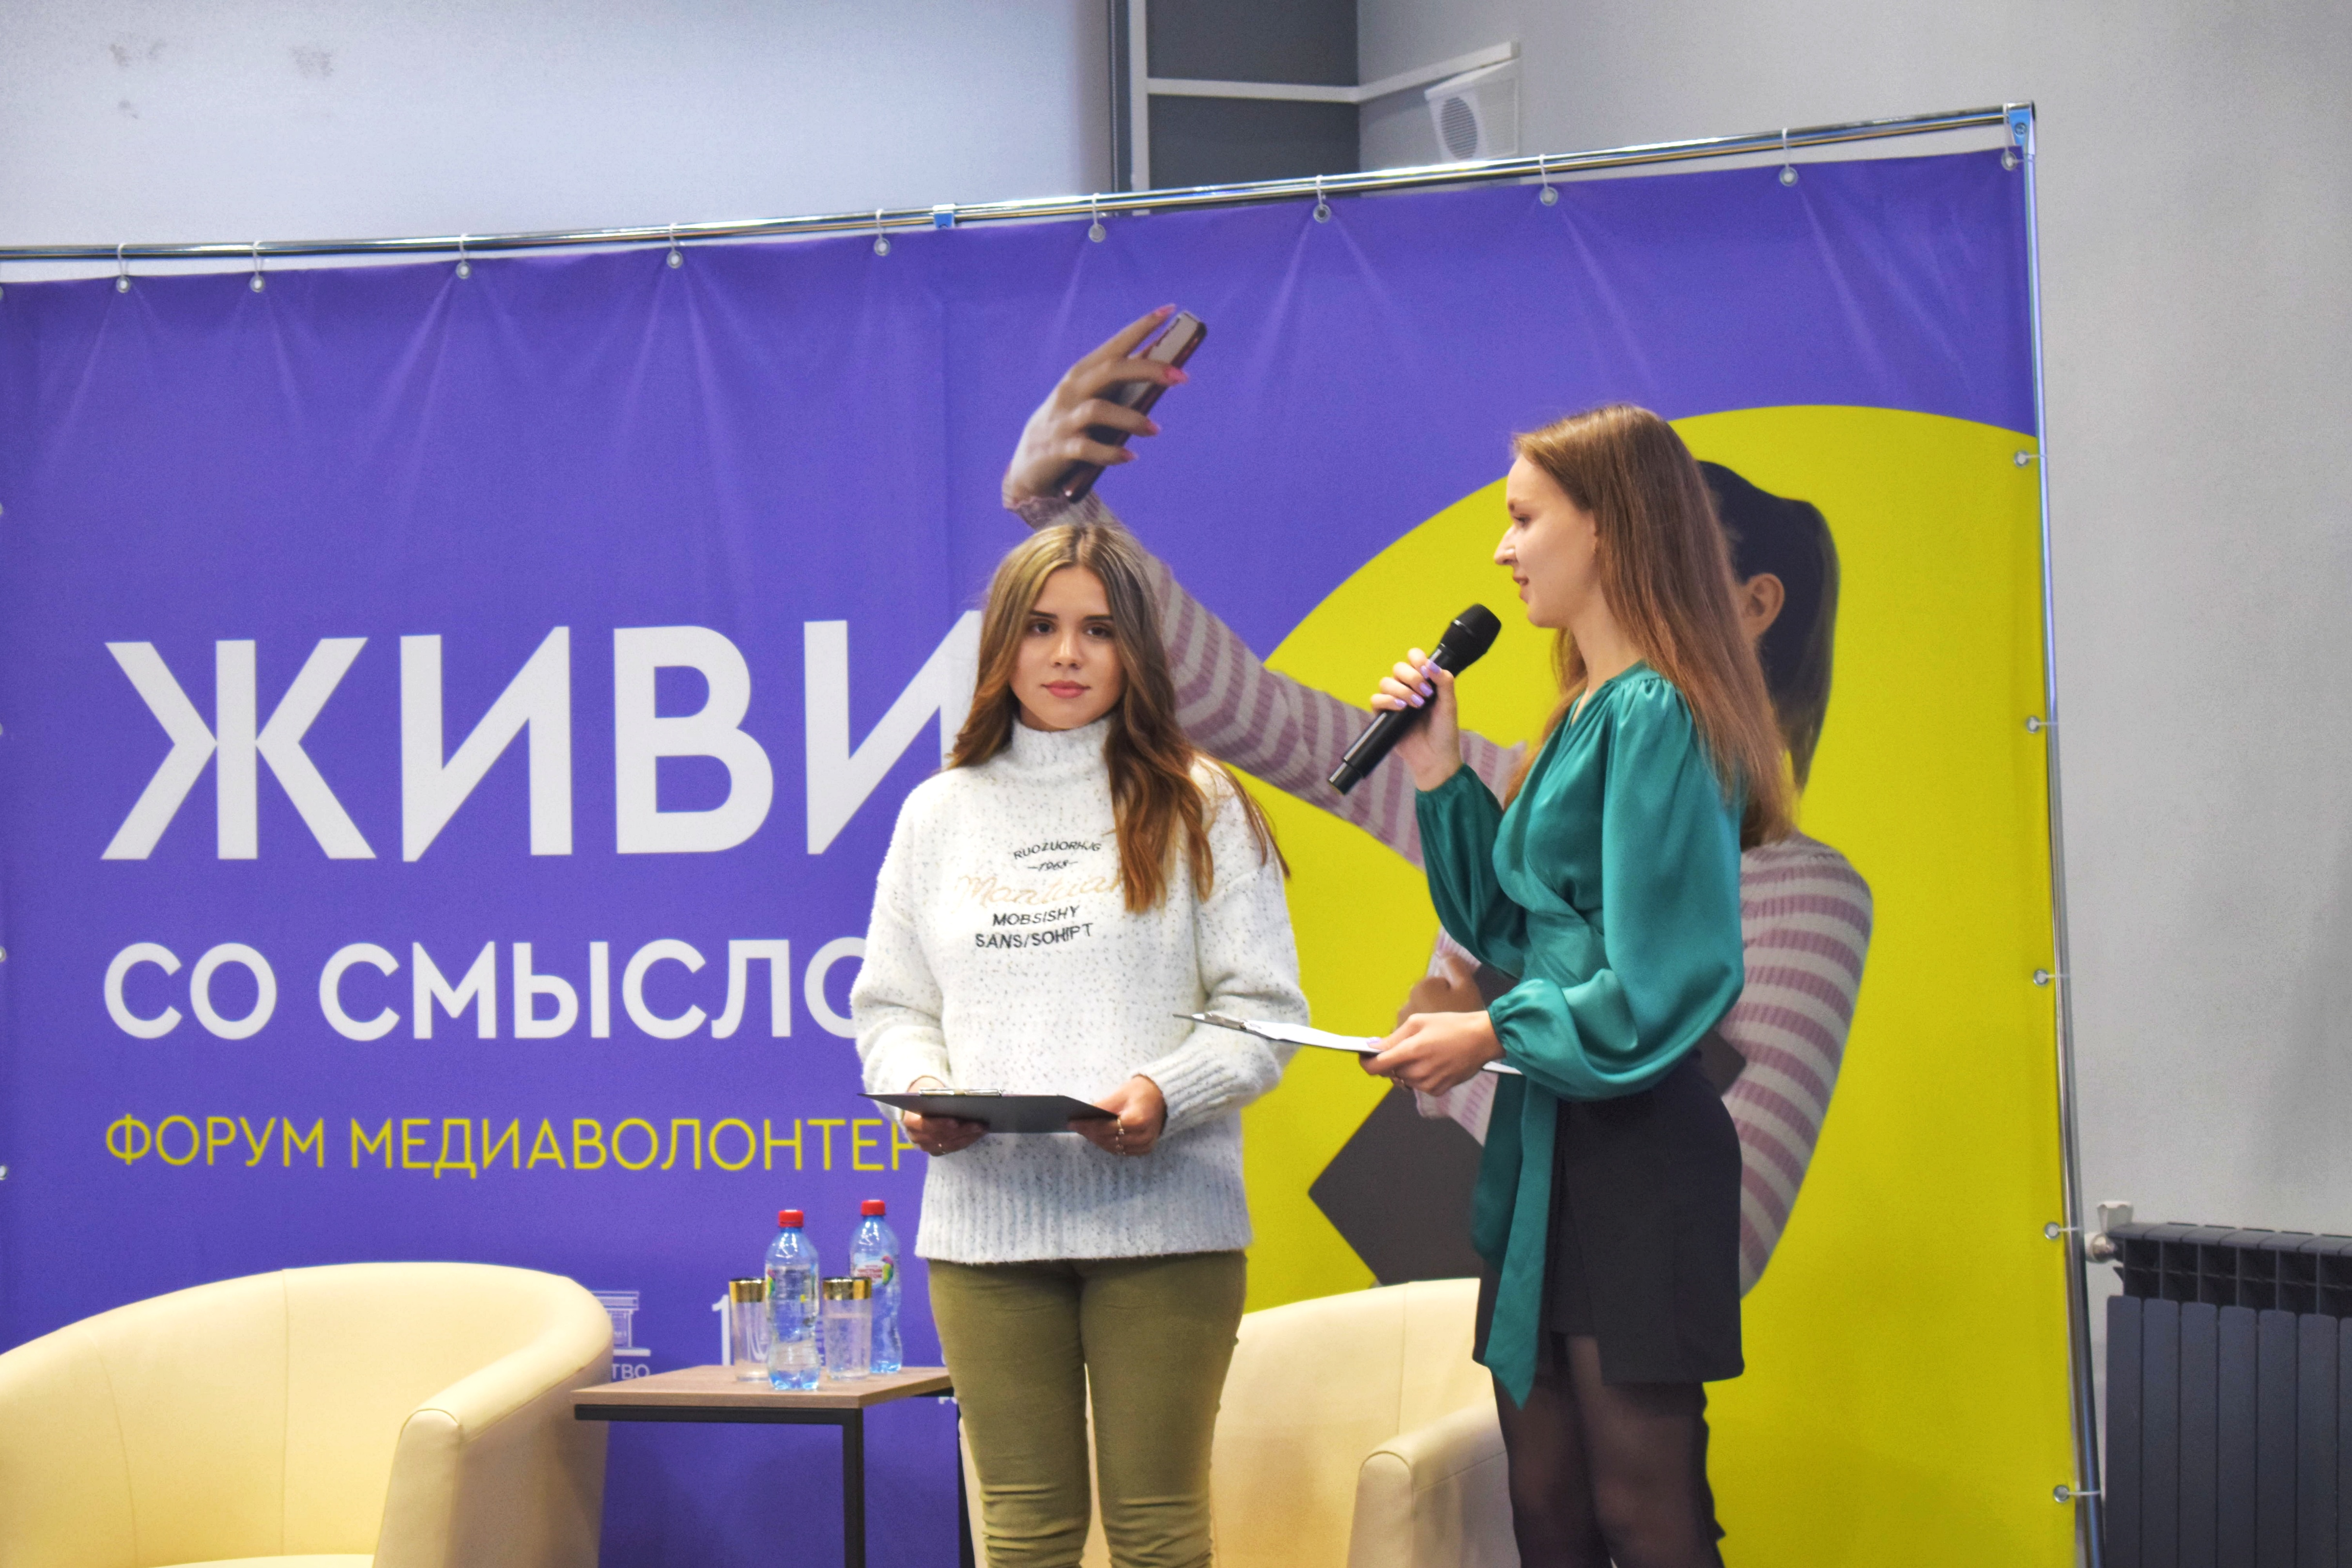 Проект команды студентов из Луганска стал лучшим на форуме медиаволонтеров в Державинском фото анонса